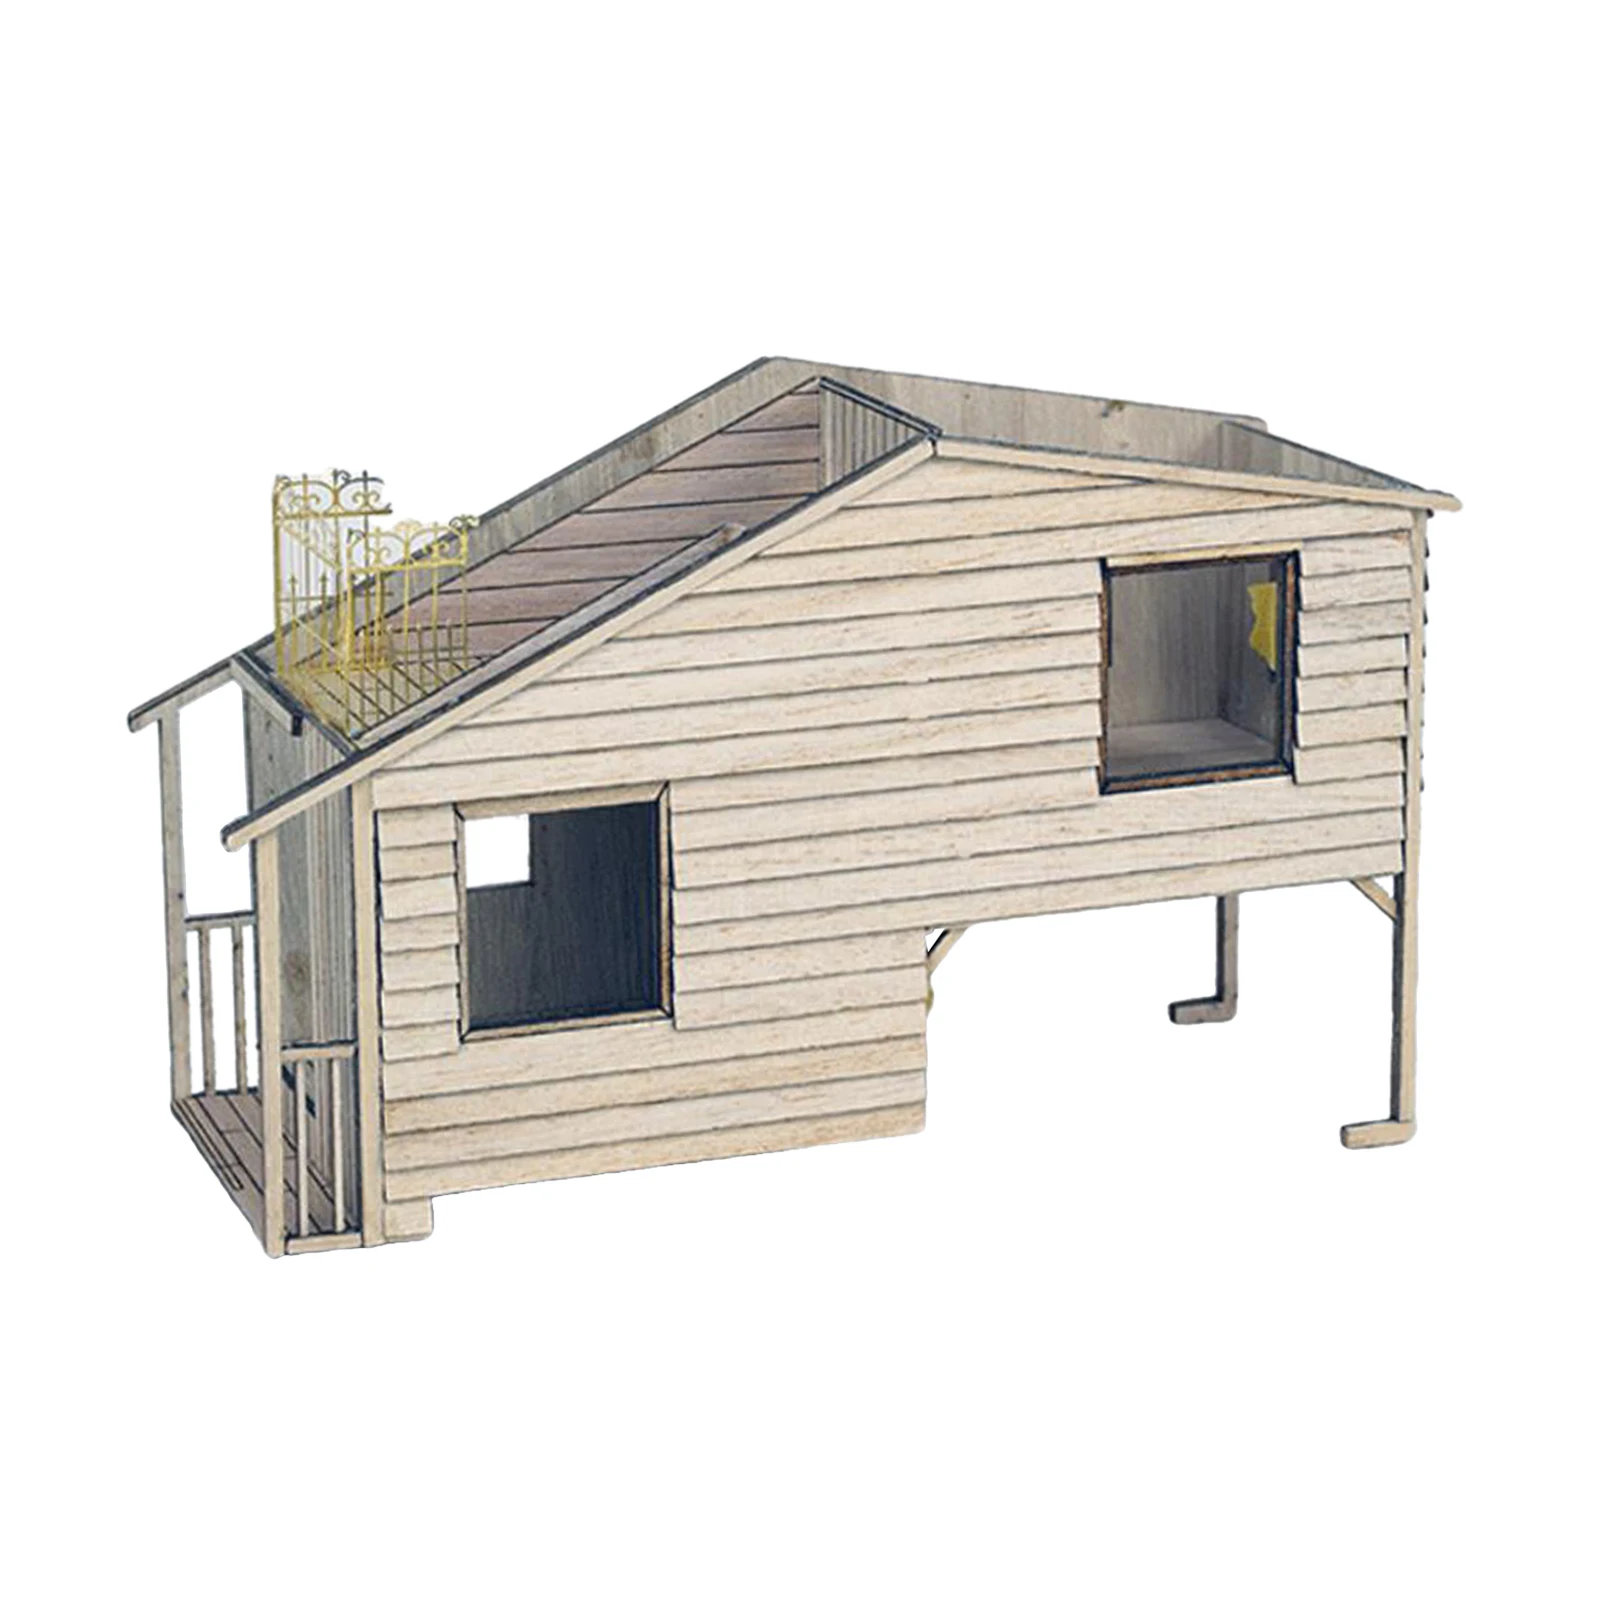 Scenario Building Model DIY Scenario 1/35 European Wooden House Simulation Scenario Model Building